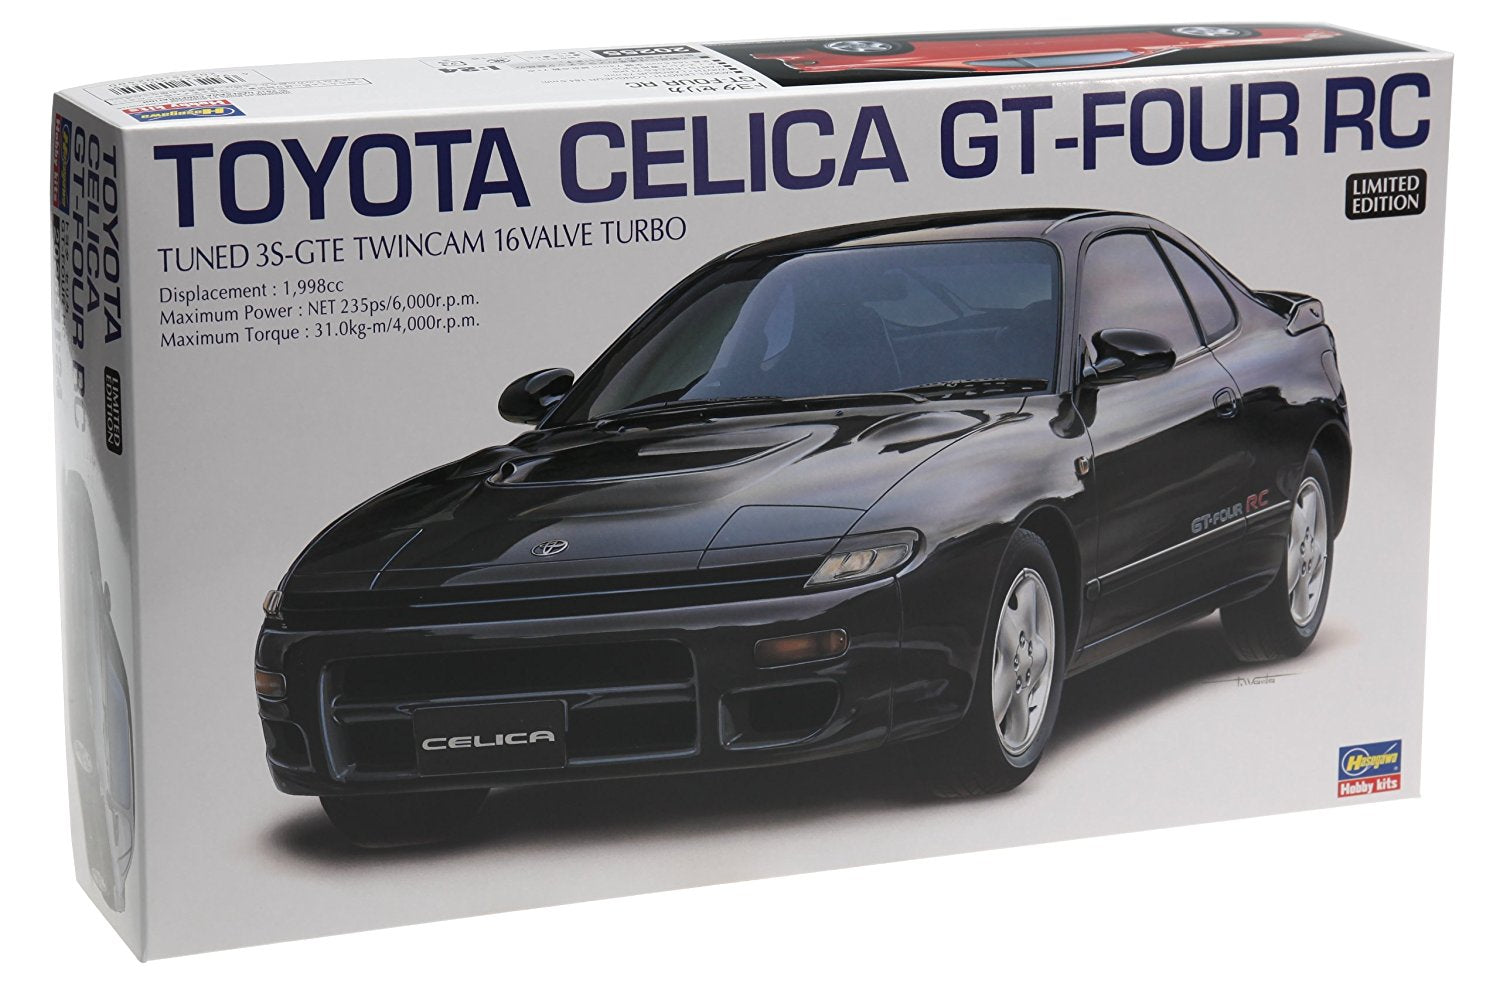 Toyota Celica GT-FOUR RC